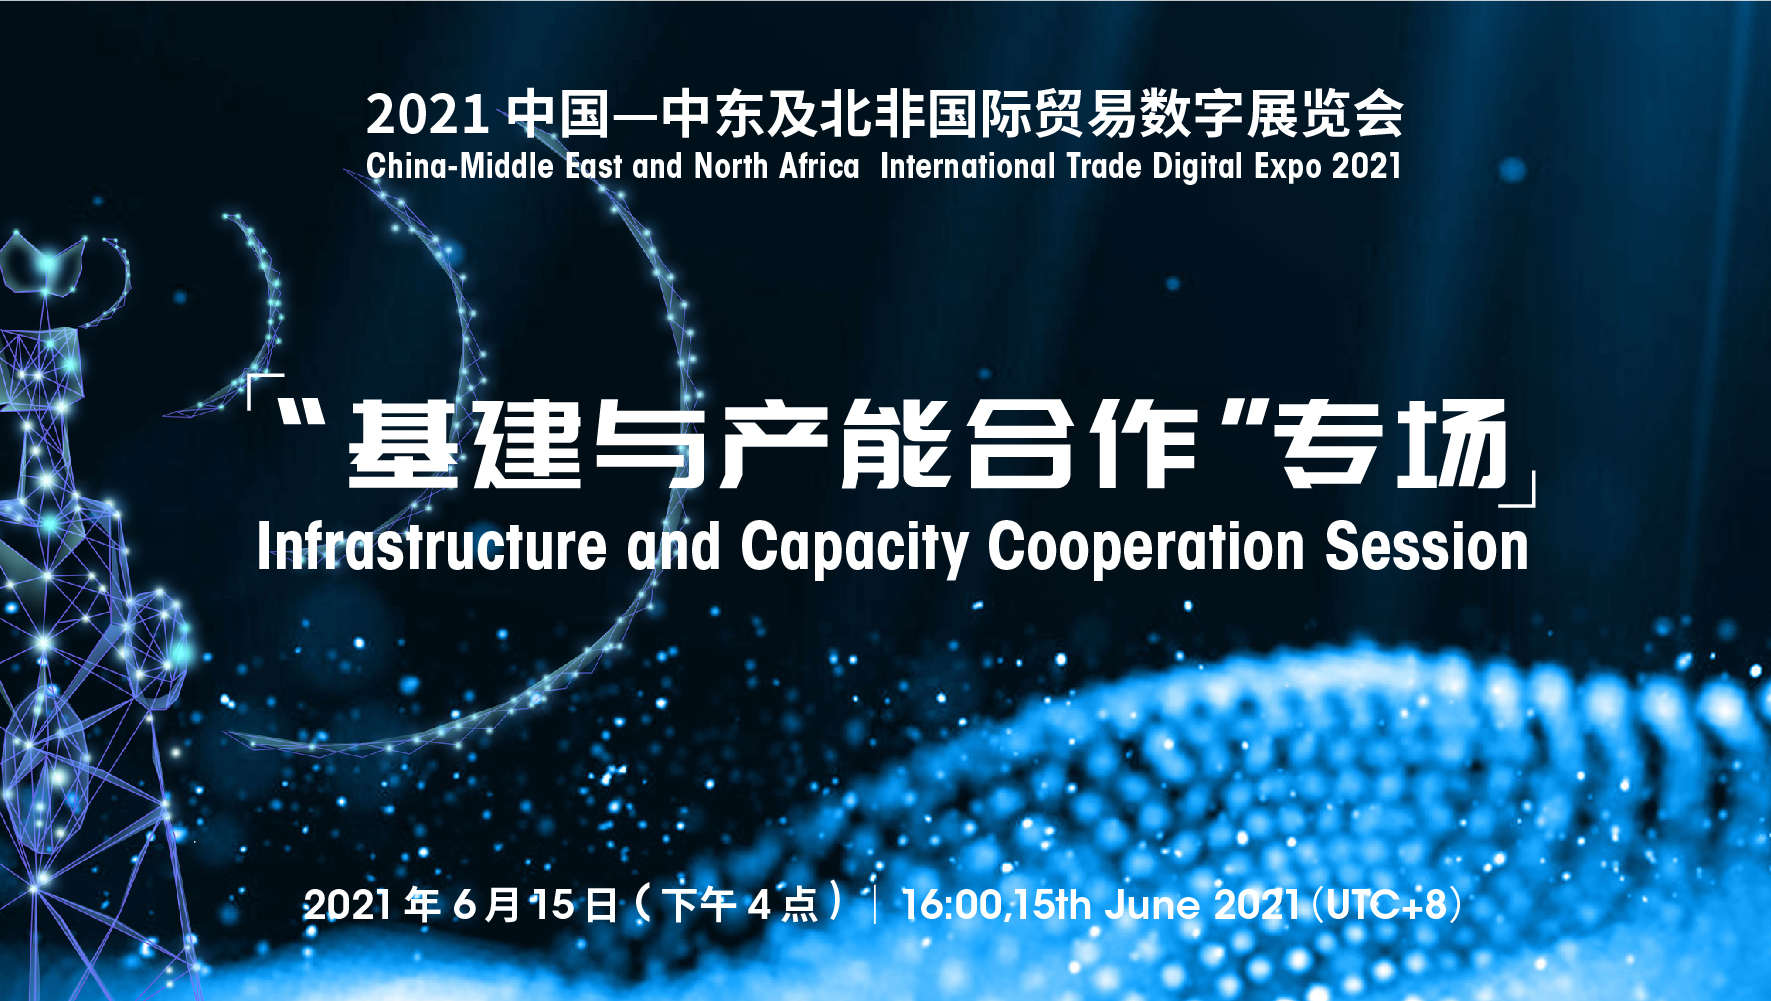 “2021年中国—中东及<font color=#ff0000>北非</font>国际贸易数字展”首场对接会“基建与产能合作”专场在线举办